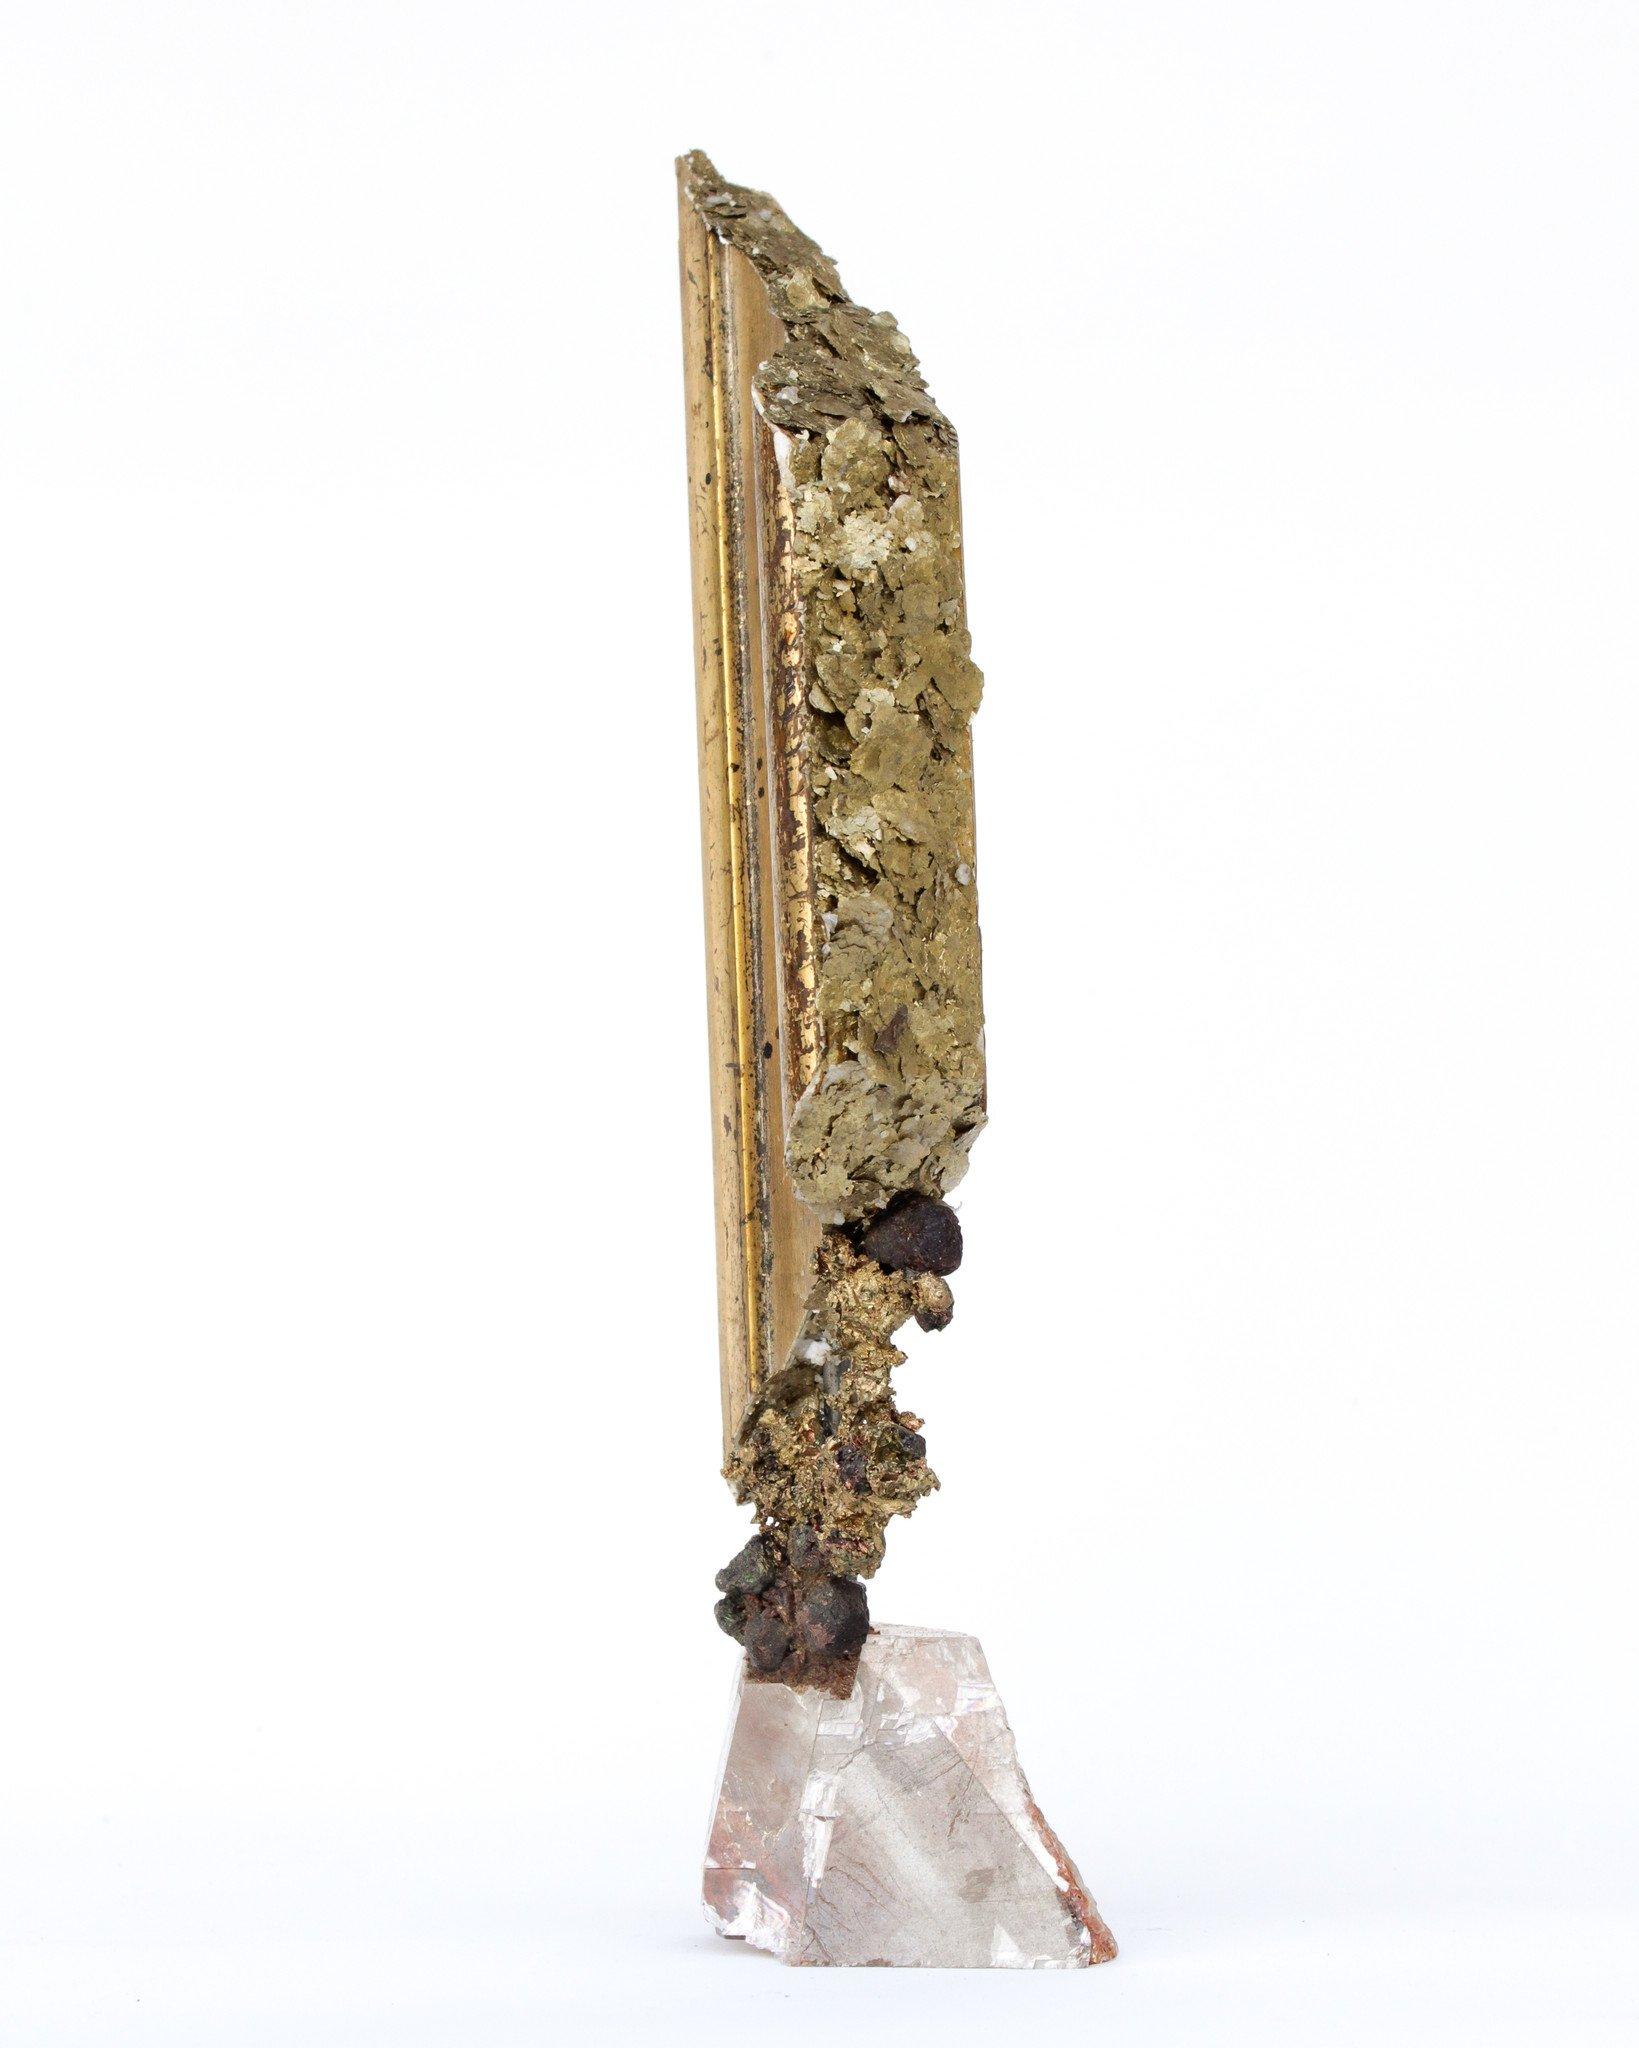 italienisches Fragment aus dem 18. Jahrhundert, verziert mit natürlichem Formkupfer, Granaten und Goldglimmer auf einem Sockel aus optischem Calcit.

Das italienische Fragment stammt ursprünglich von einem Stück aus einer Kirche in der Toskana.